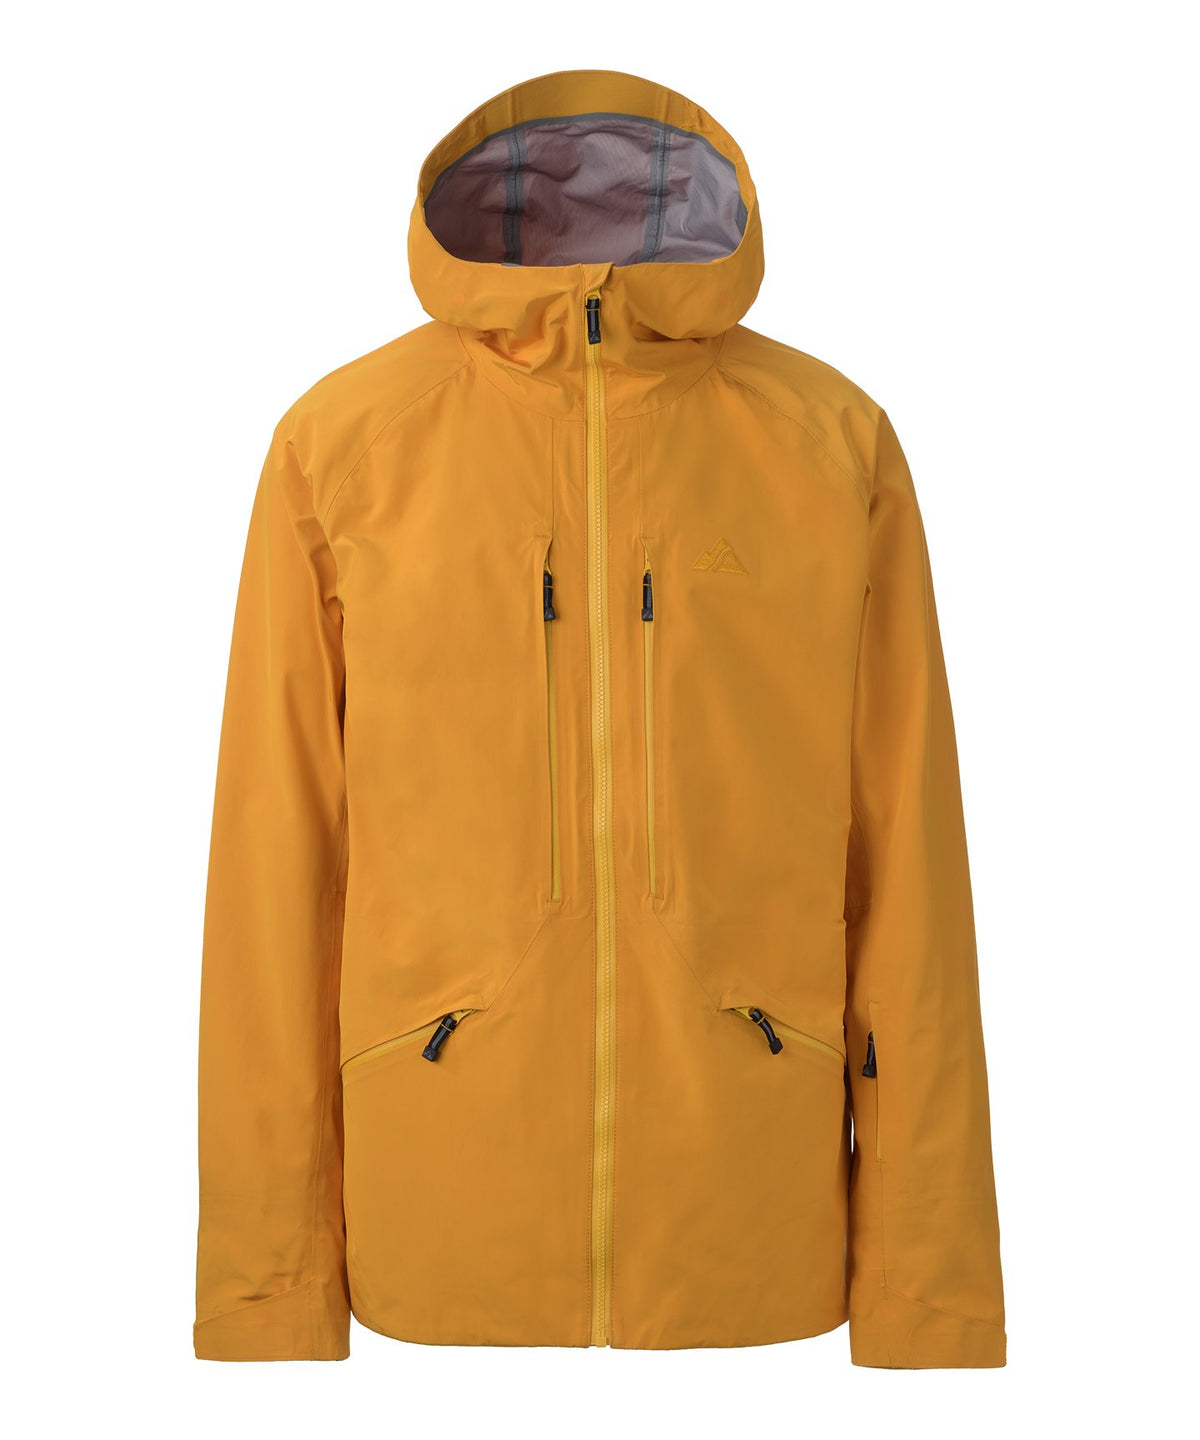 strafe nomad jacket